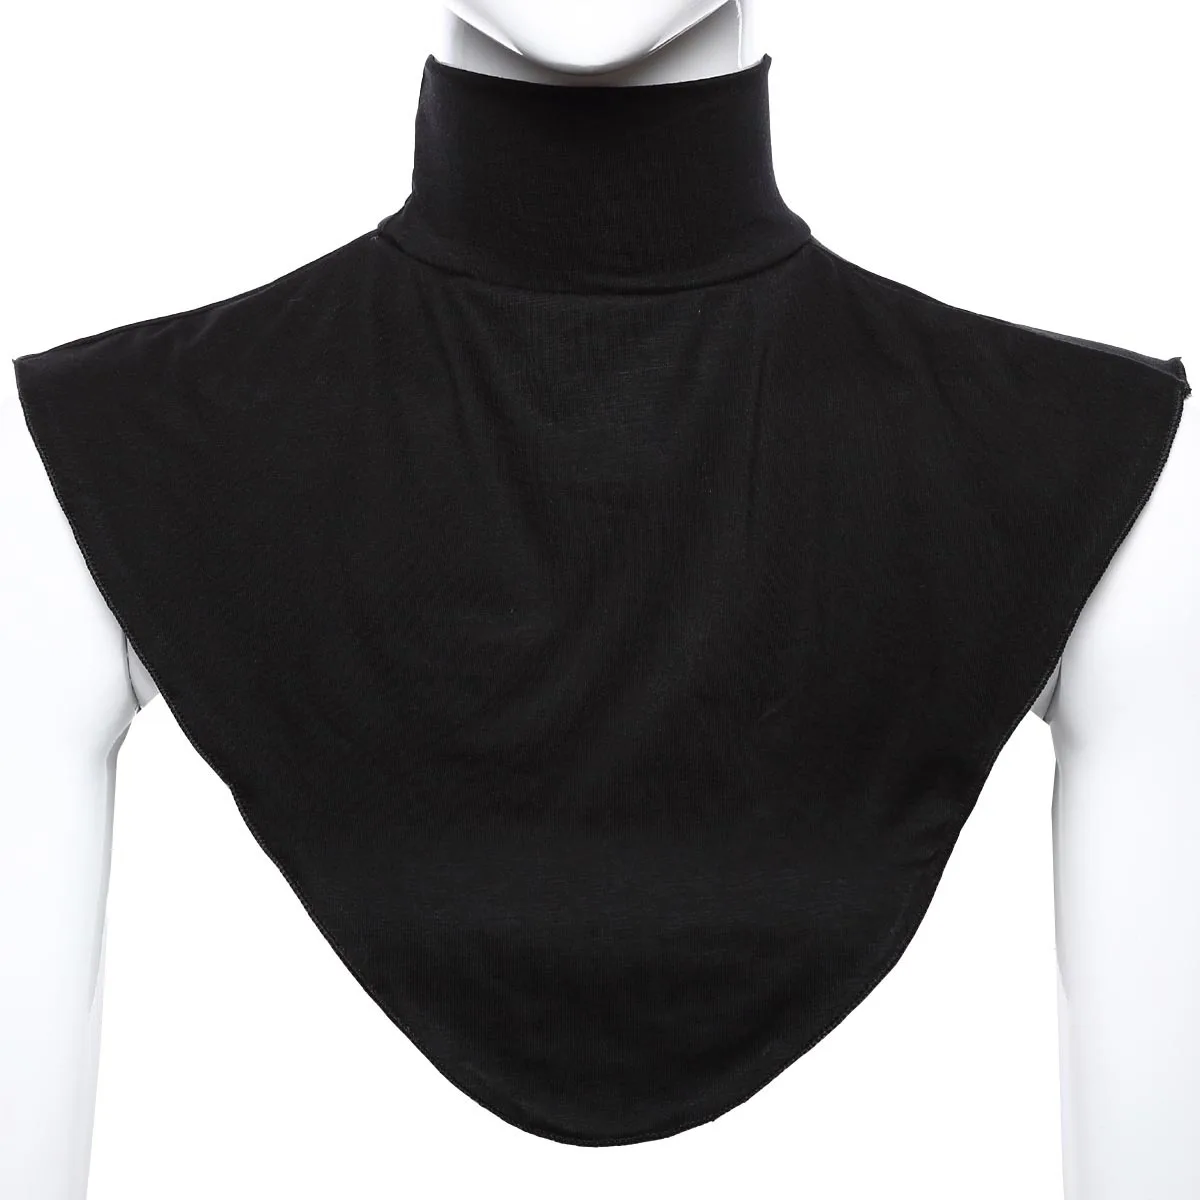 Мода для мужчин и женщин вязание Поддельный Воротник исламский хиджаб расширение шеи грудь модальный шарф половина мусульманский воротник карамельный цвет - Цвет: Черный